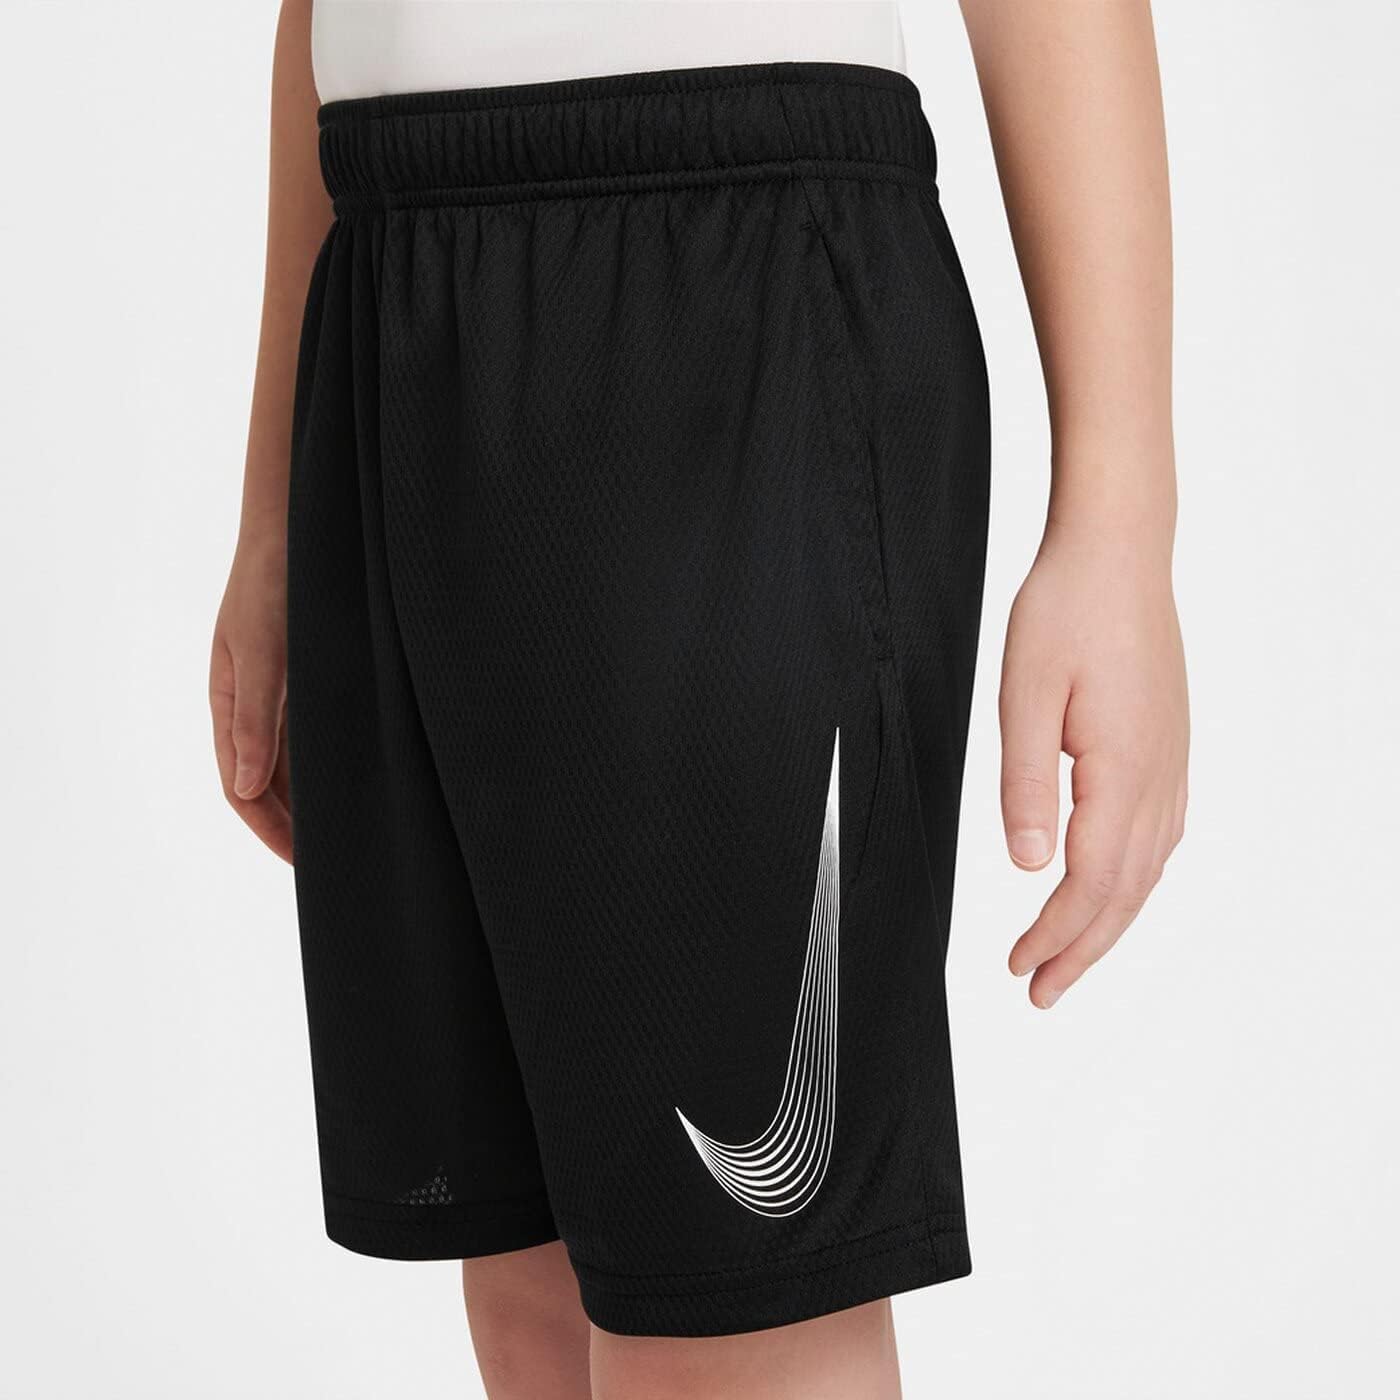 Nike Boy's Df Hbr Shorts, Black/White, XS